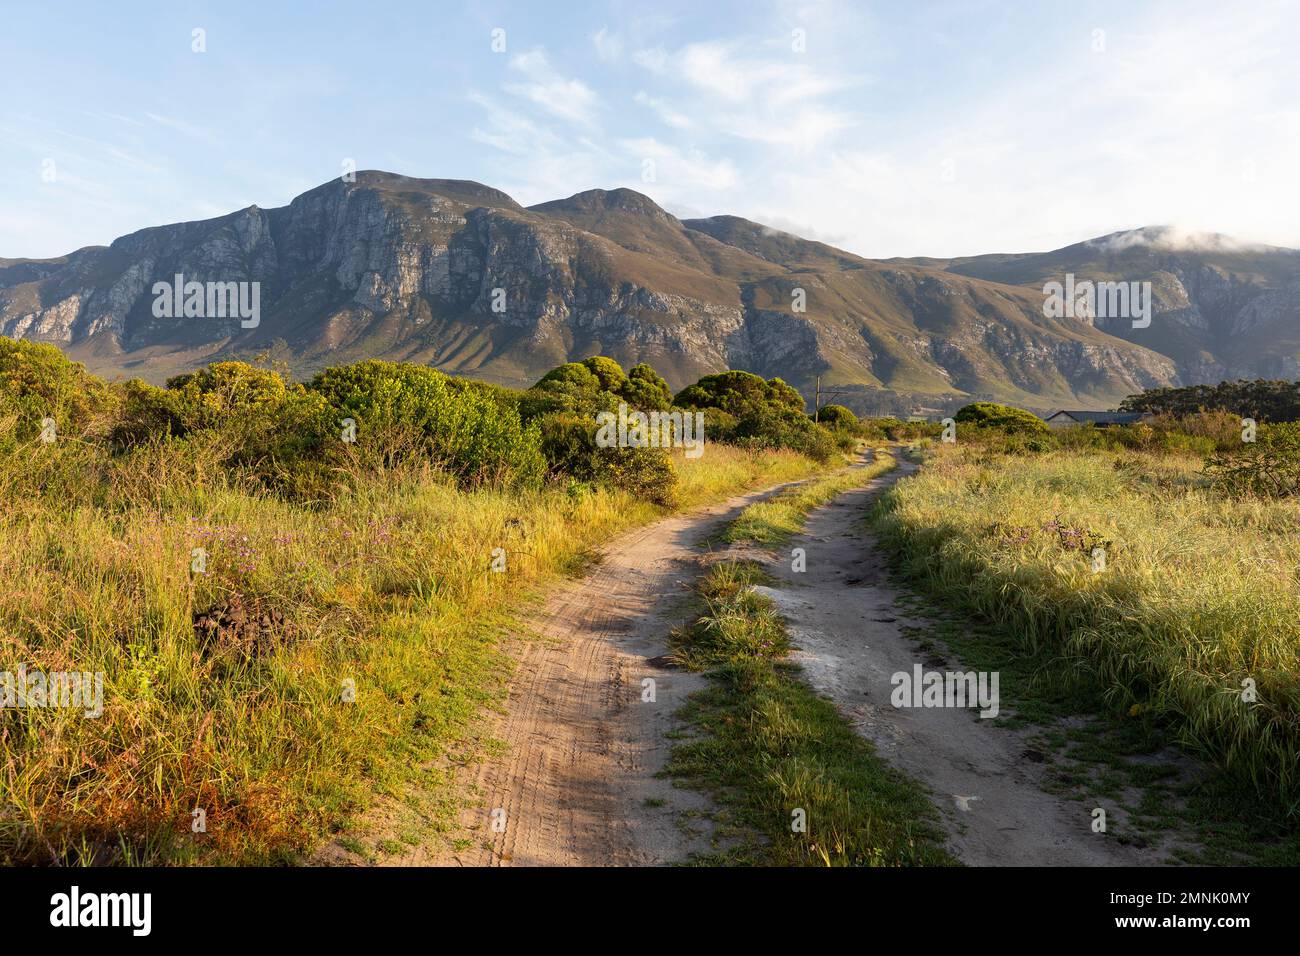 Afrique du Sud, Stanford, route de terre menant aux montagnes Klein Banque D'Images